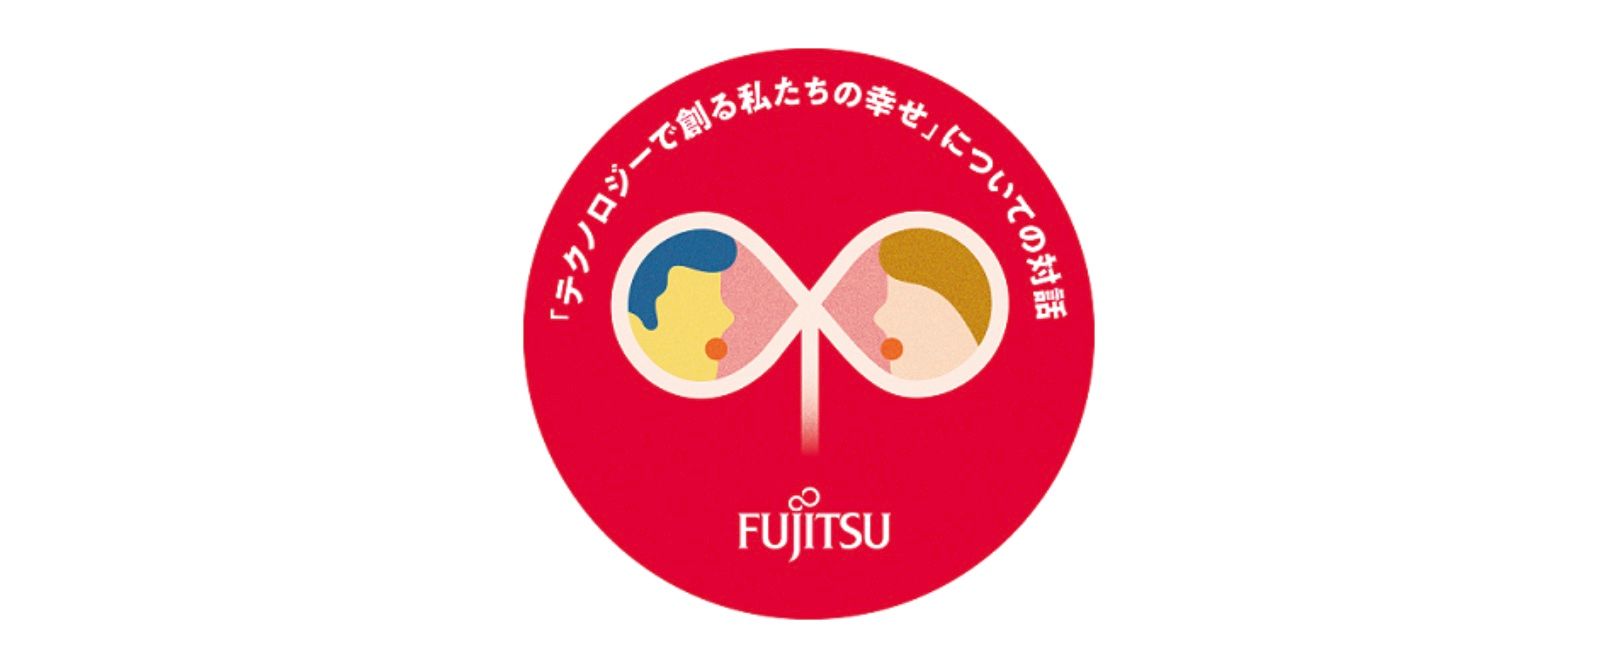 Fujitsu participa en actividades para escuchar las voces de las generaciones futuras con el fin de promover el bienestar social en Japón